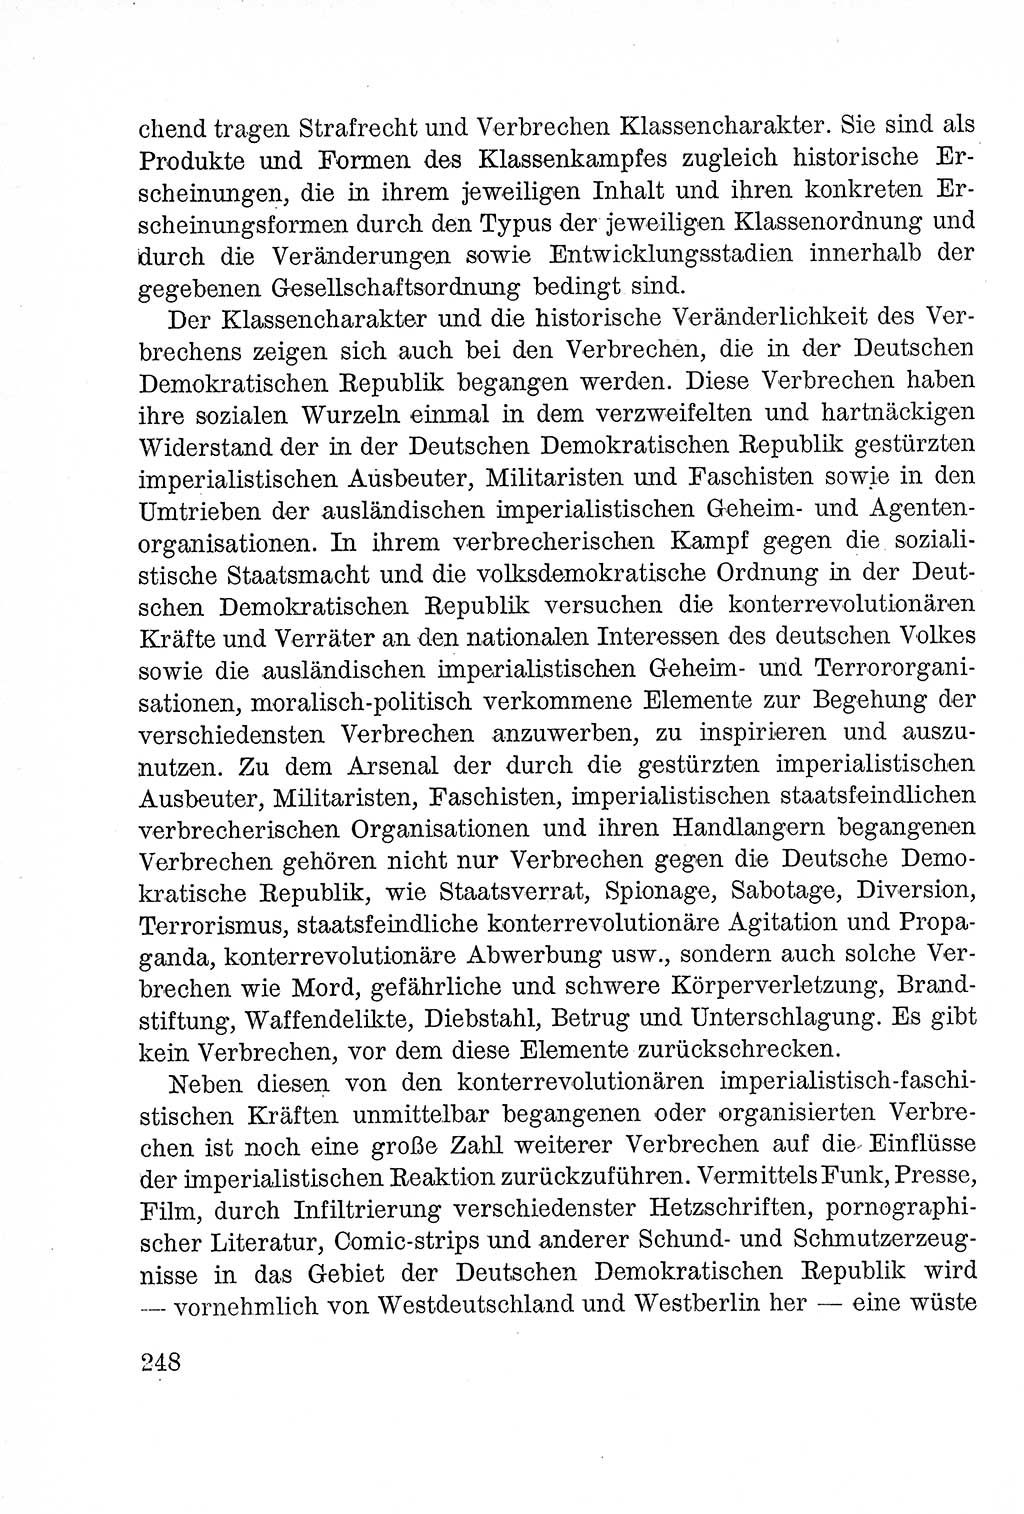 Lehrbuch des Strafrechts der Deutschen Demokratischen Republik (DDR), Allgemeiner Teil 1957, Seite 248 (Lb. Strafr. DDR AT 1957, S. 248)